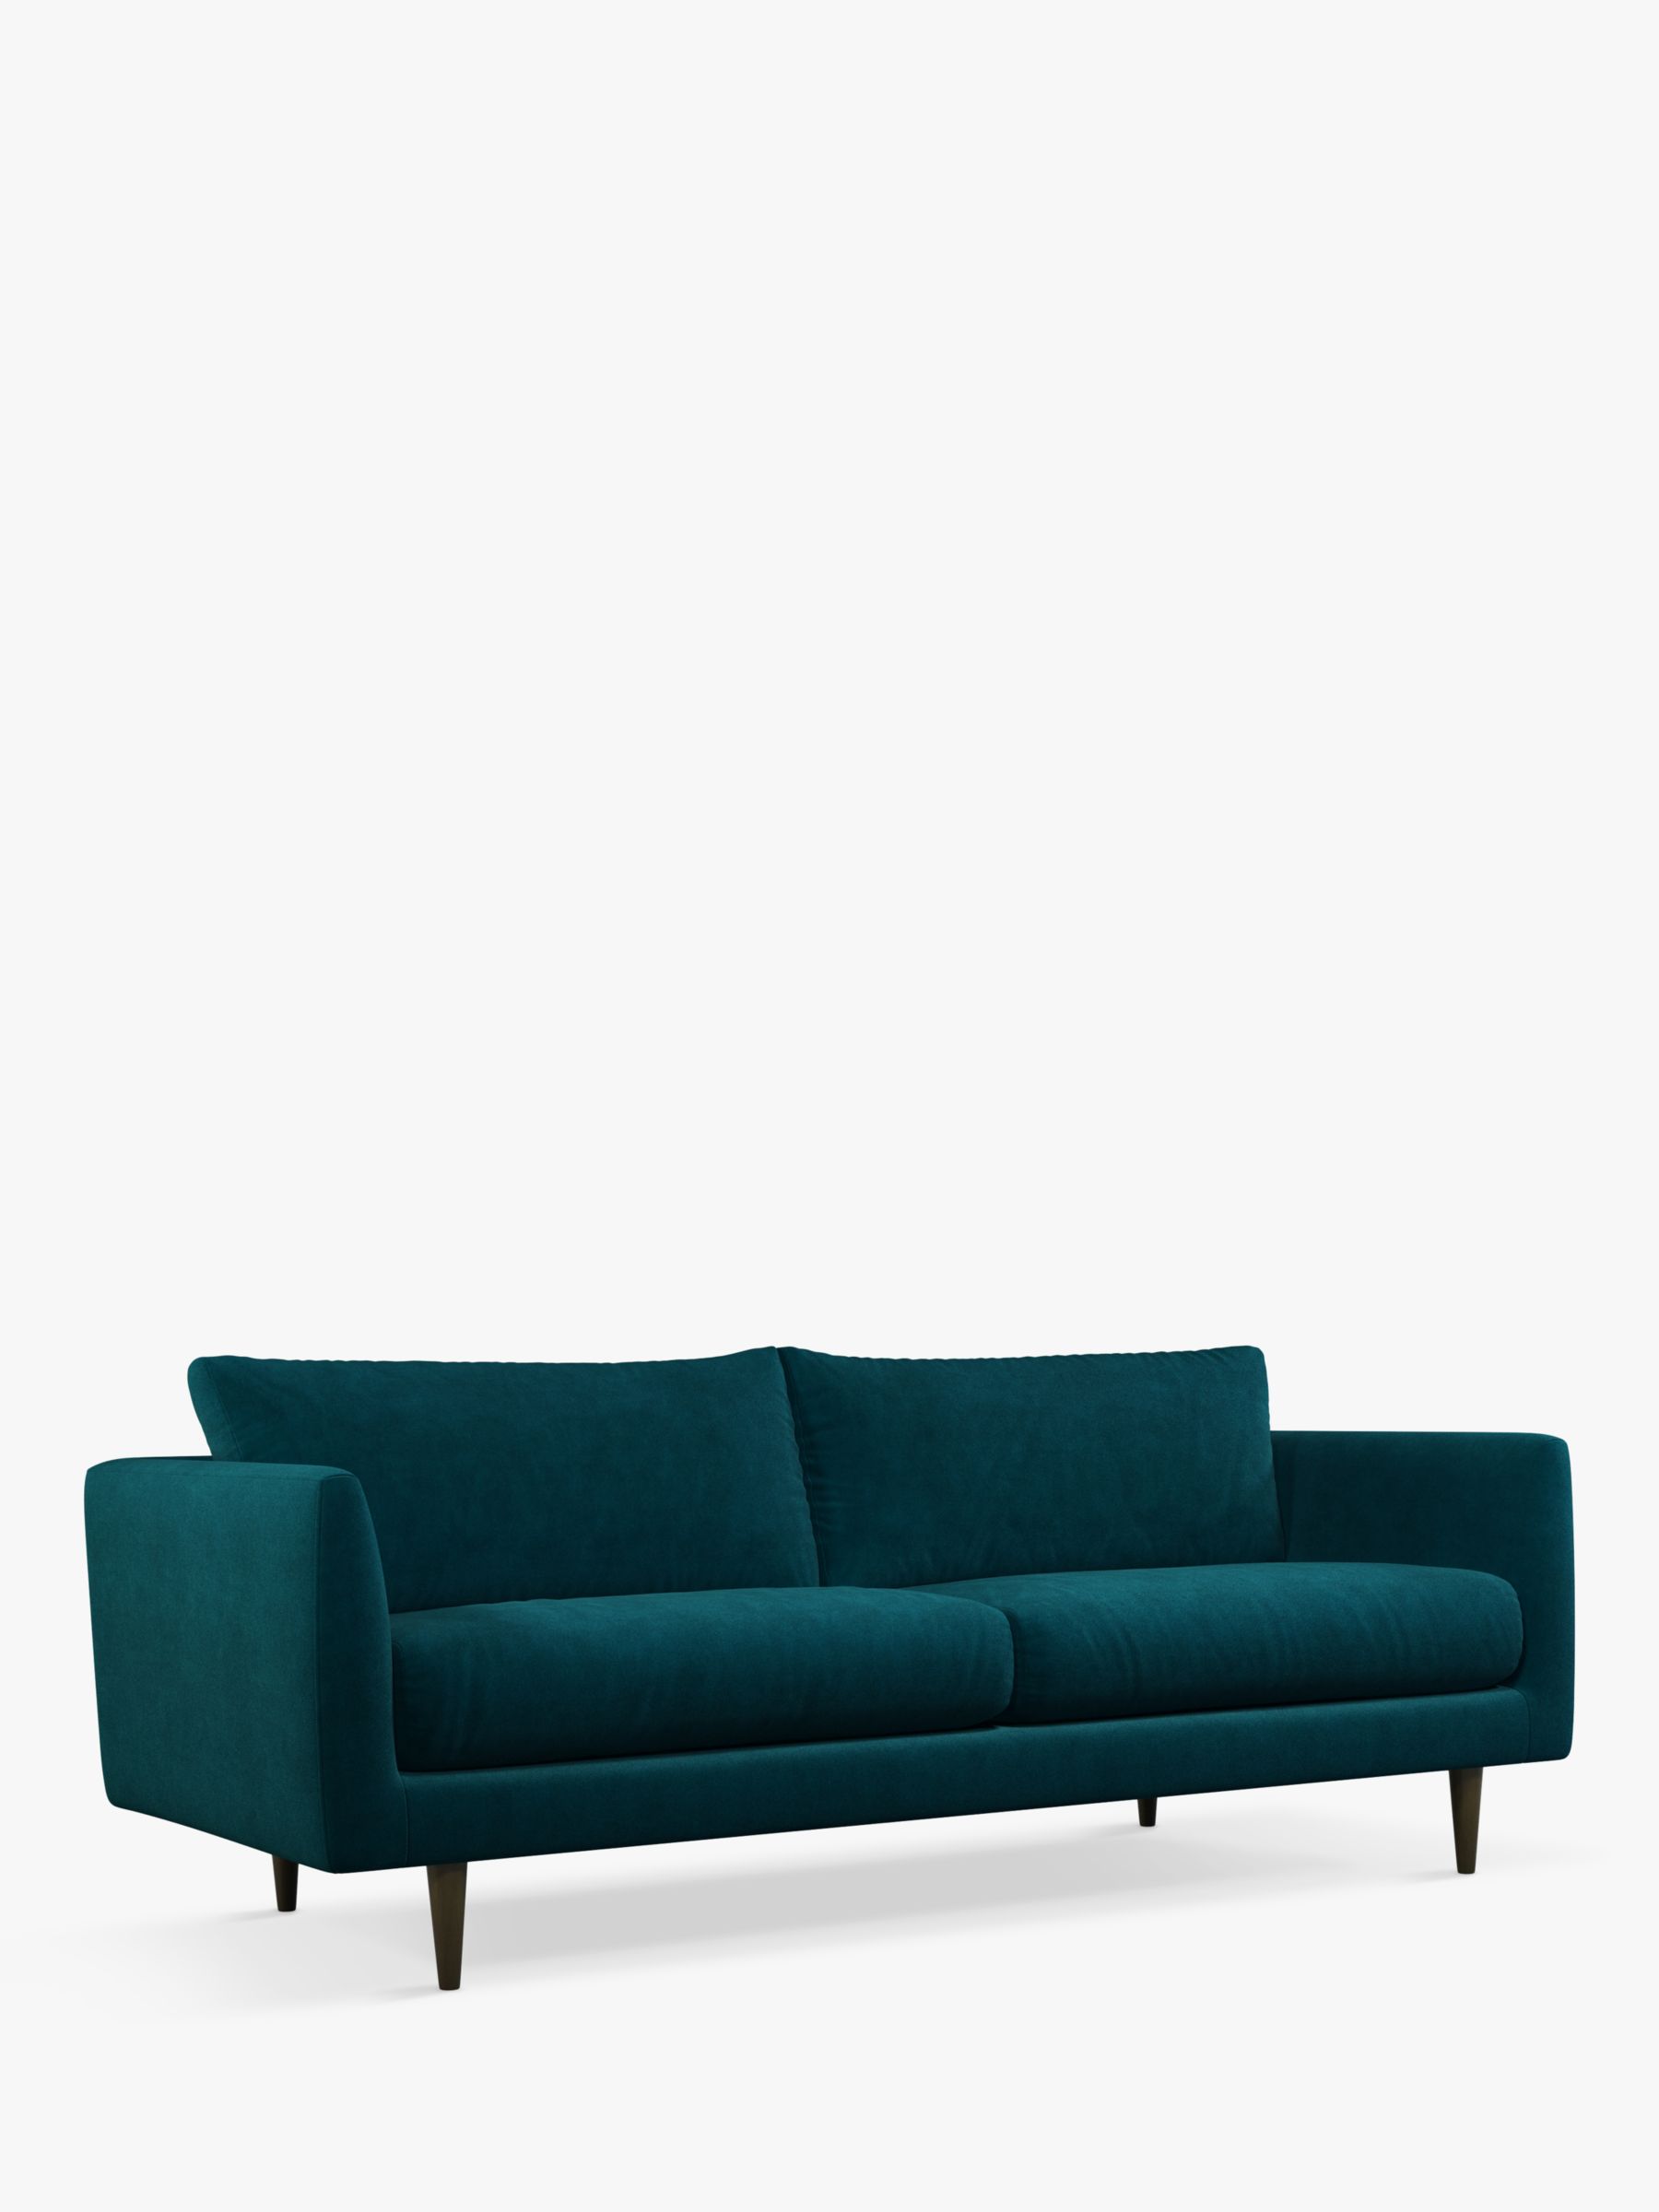 John Lewis + Swoon Latimer Large 3 Seater Sofa